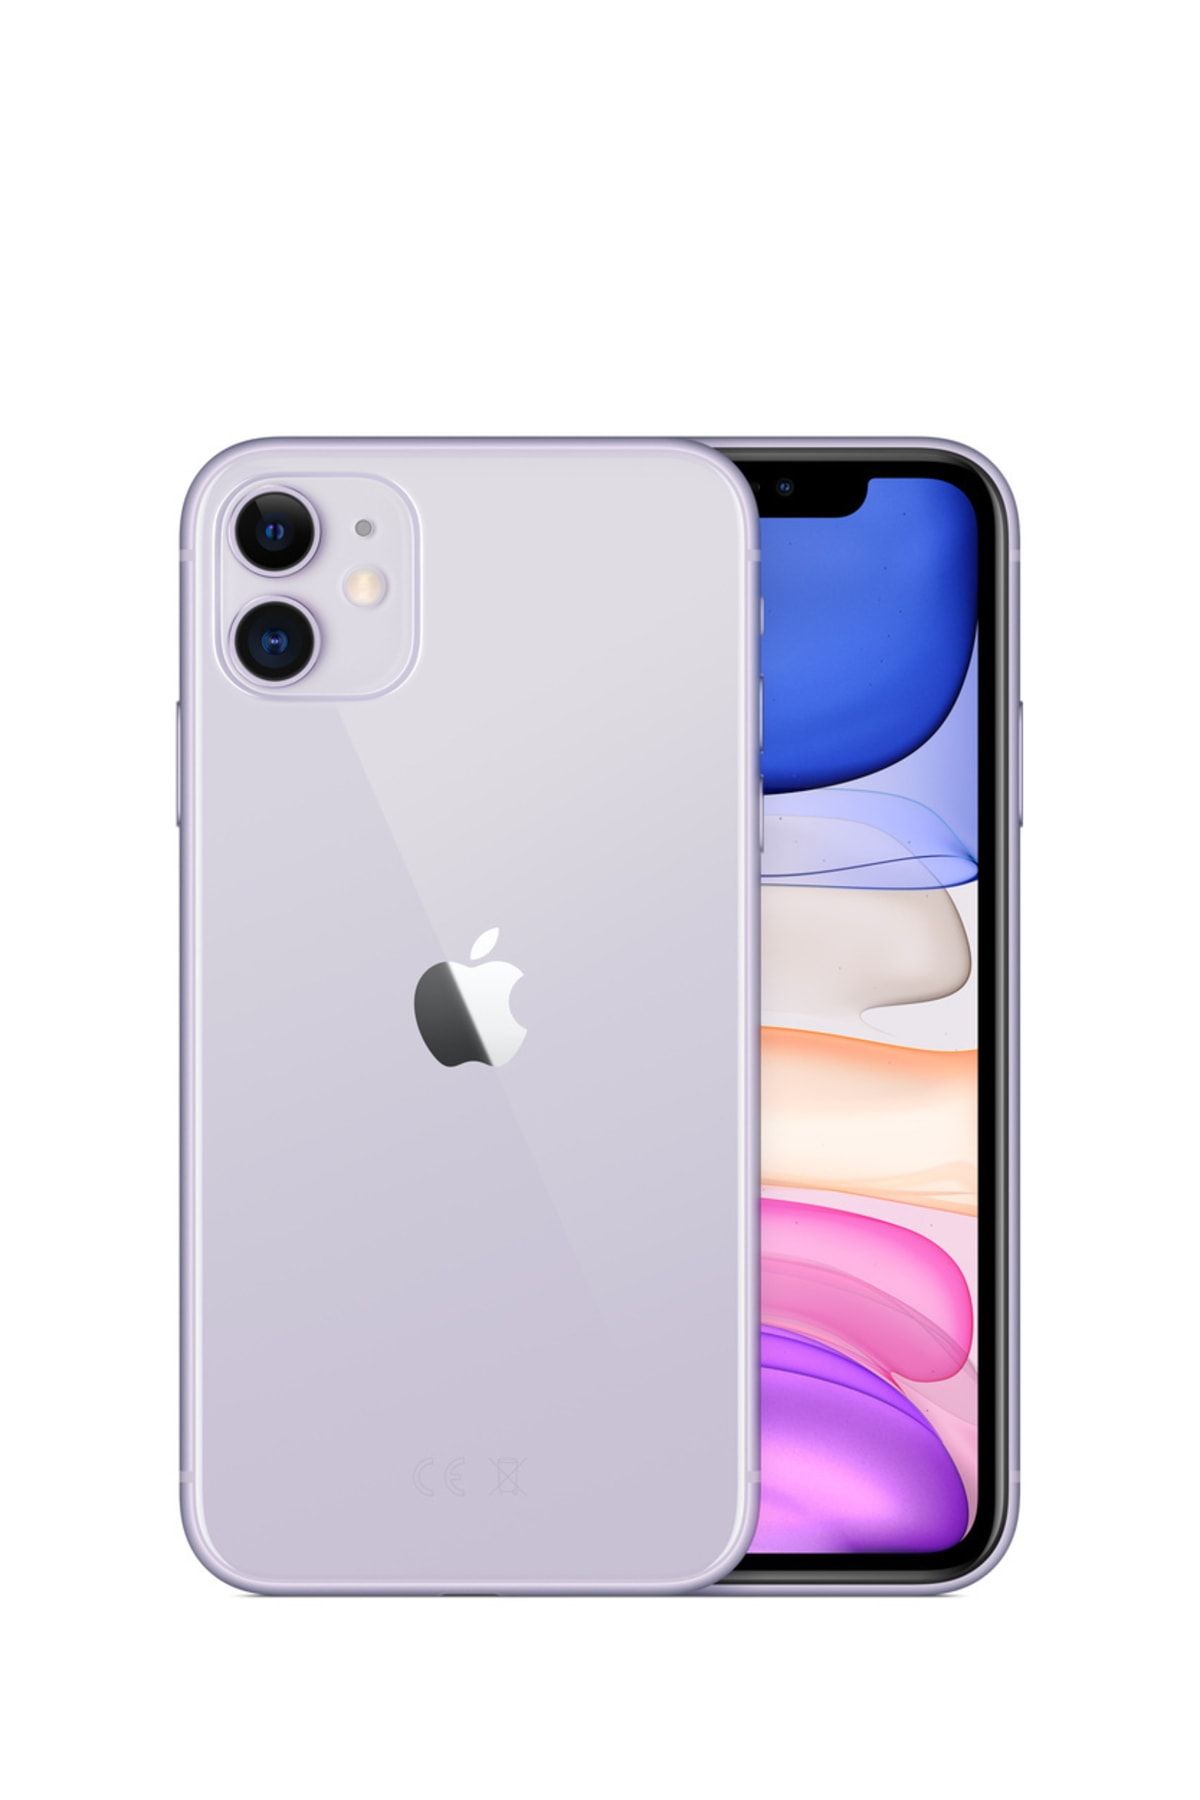 Apple Yenilenmiş iPhone 11 128 GB Purple (12 Ay Garantili) B Grade